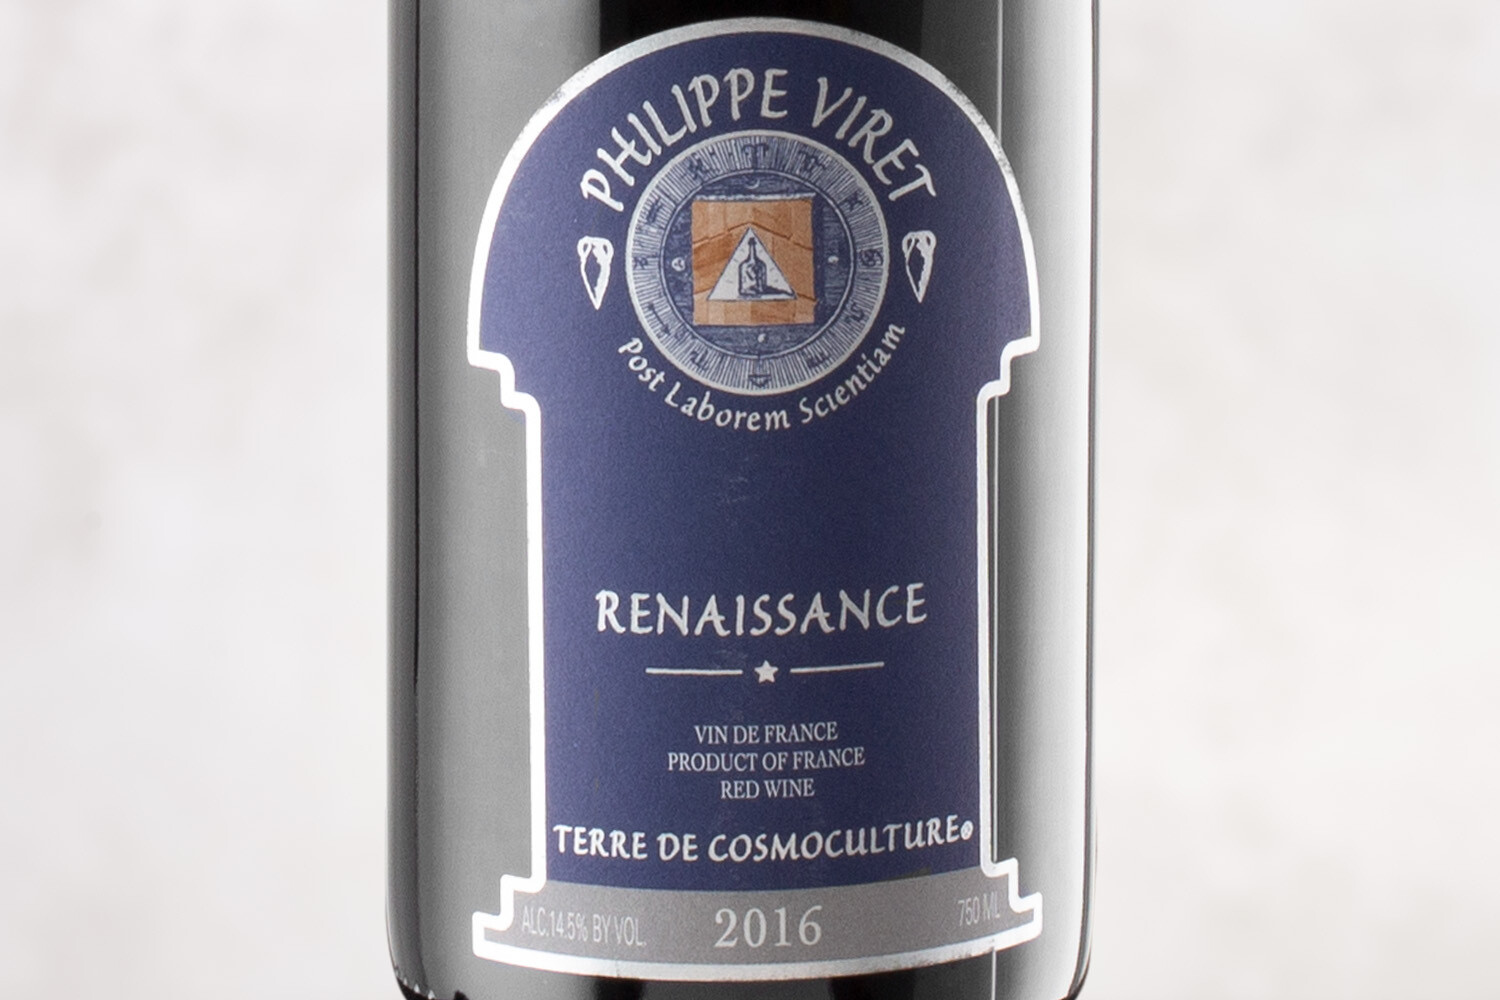 Domaine Phillippe Viret 2016 "Renaissance"